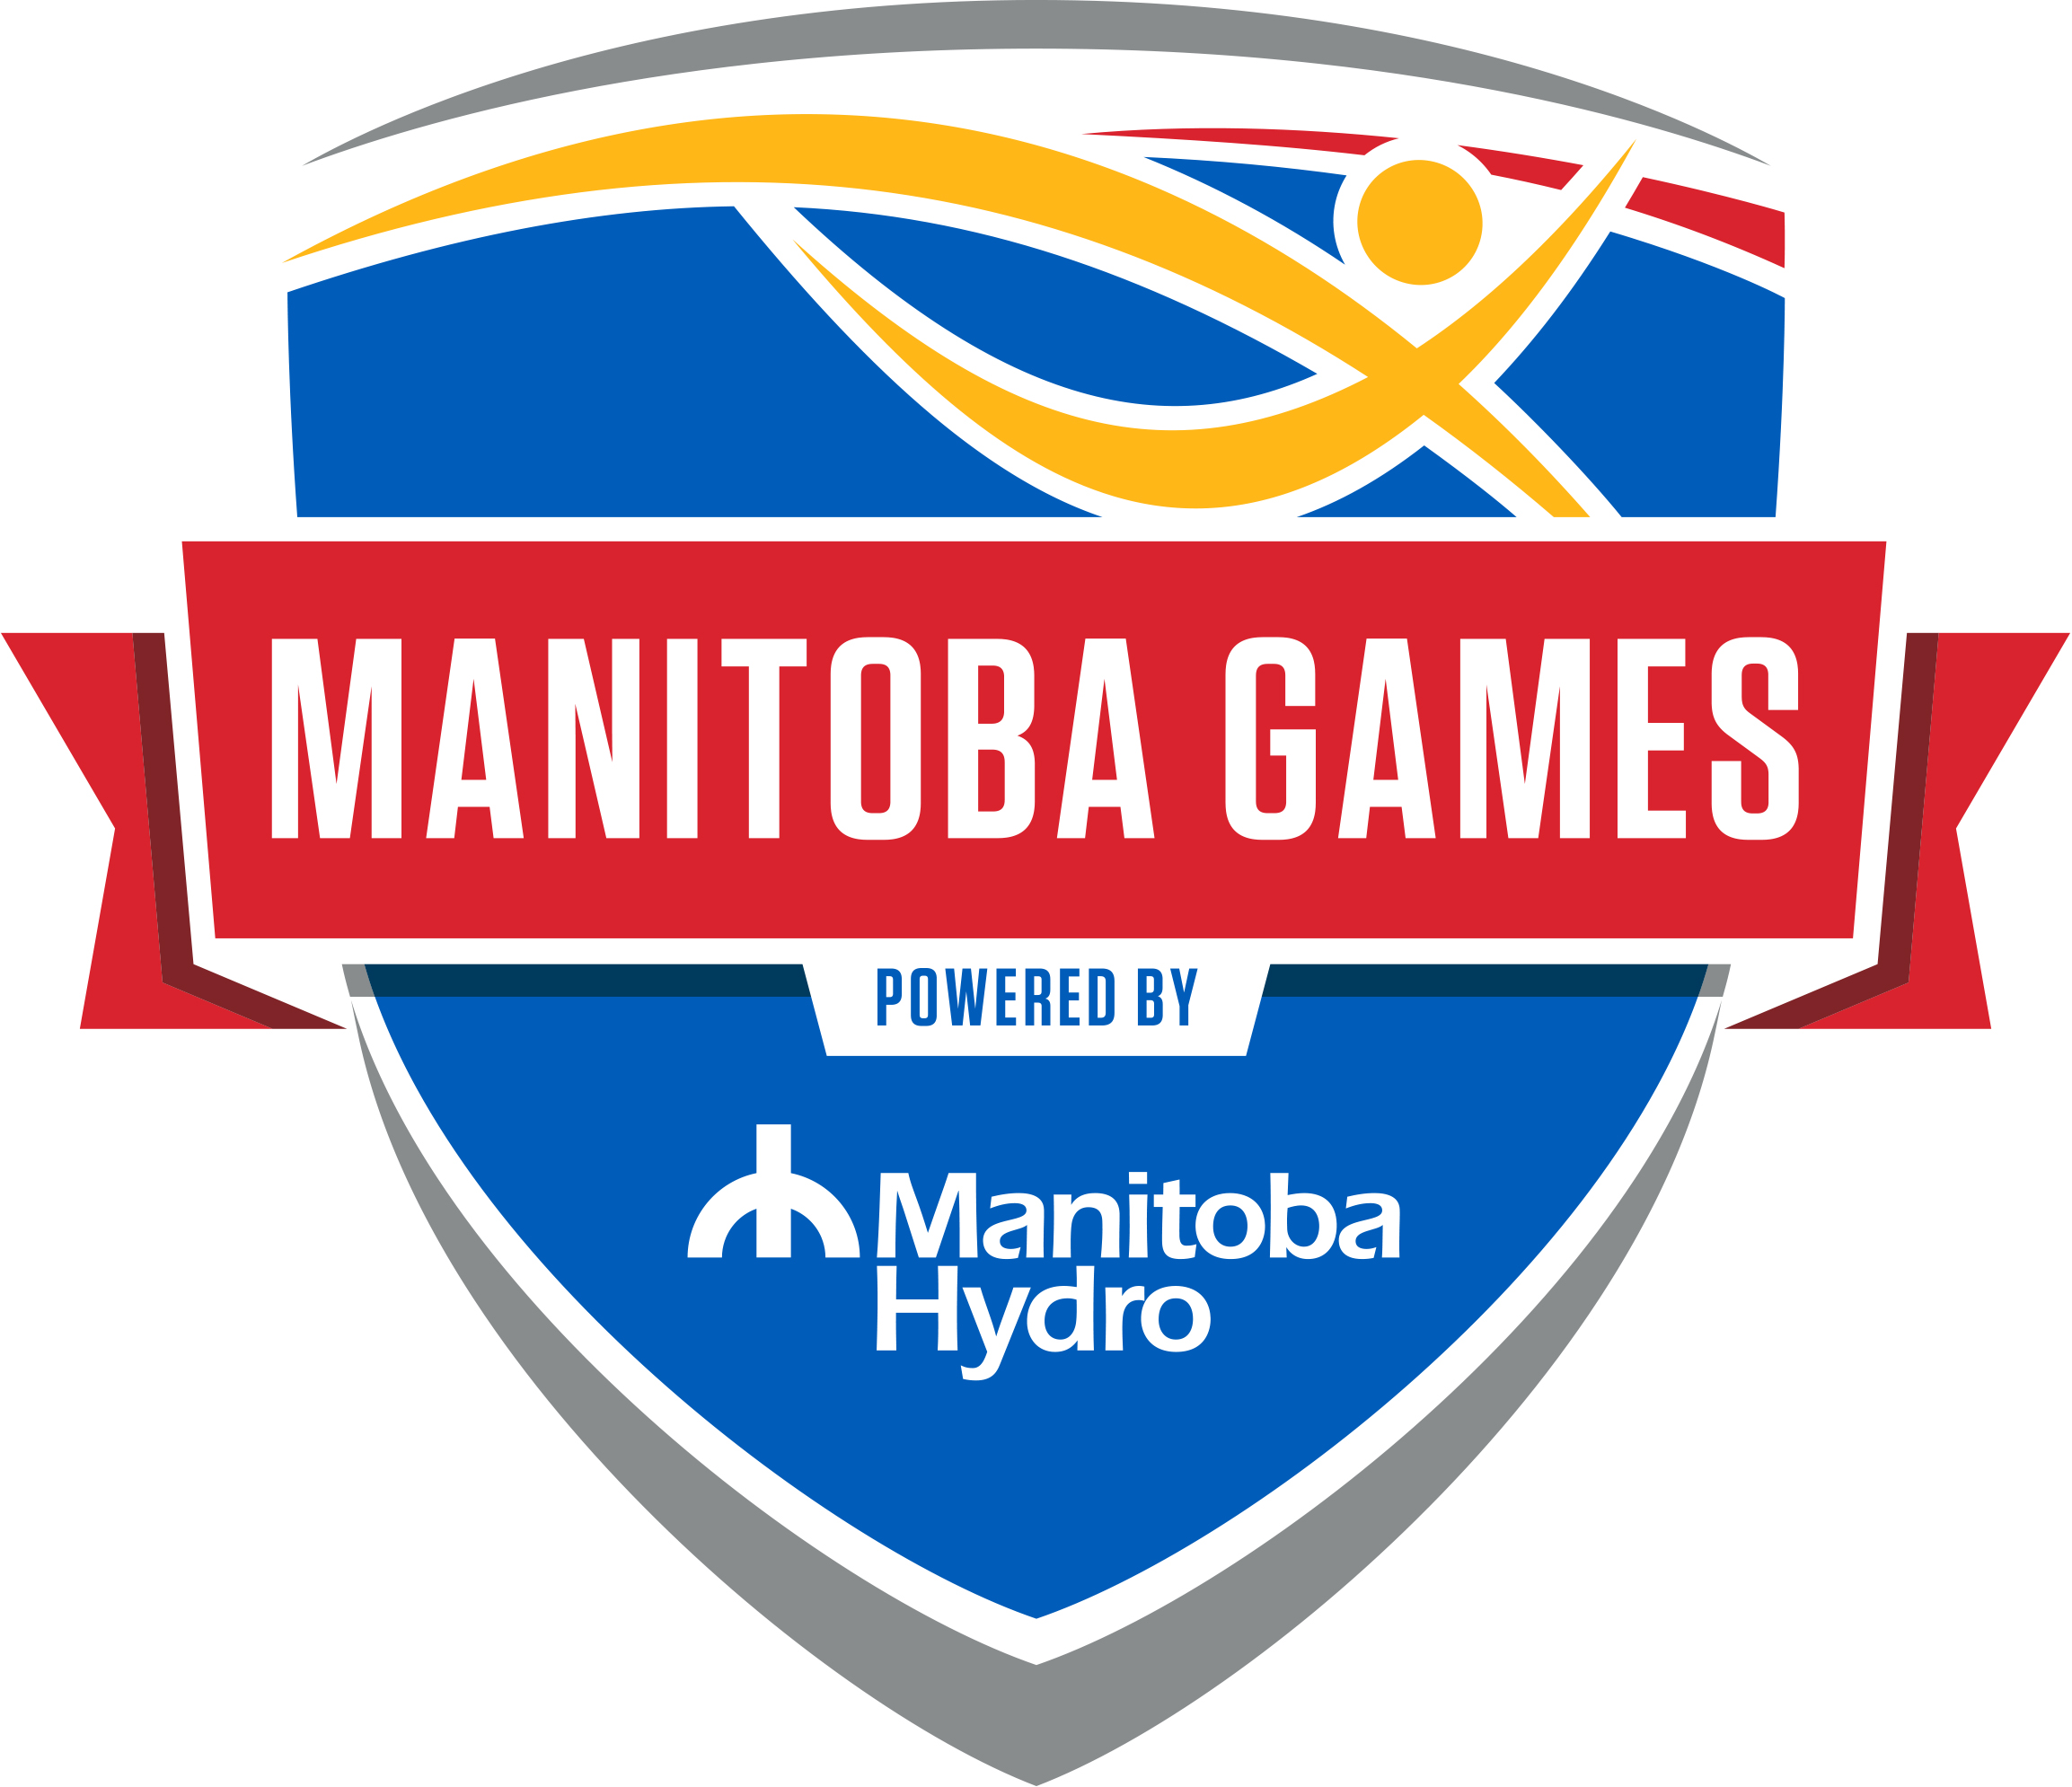 Manitoba Games Logo